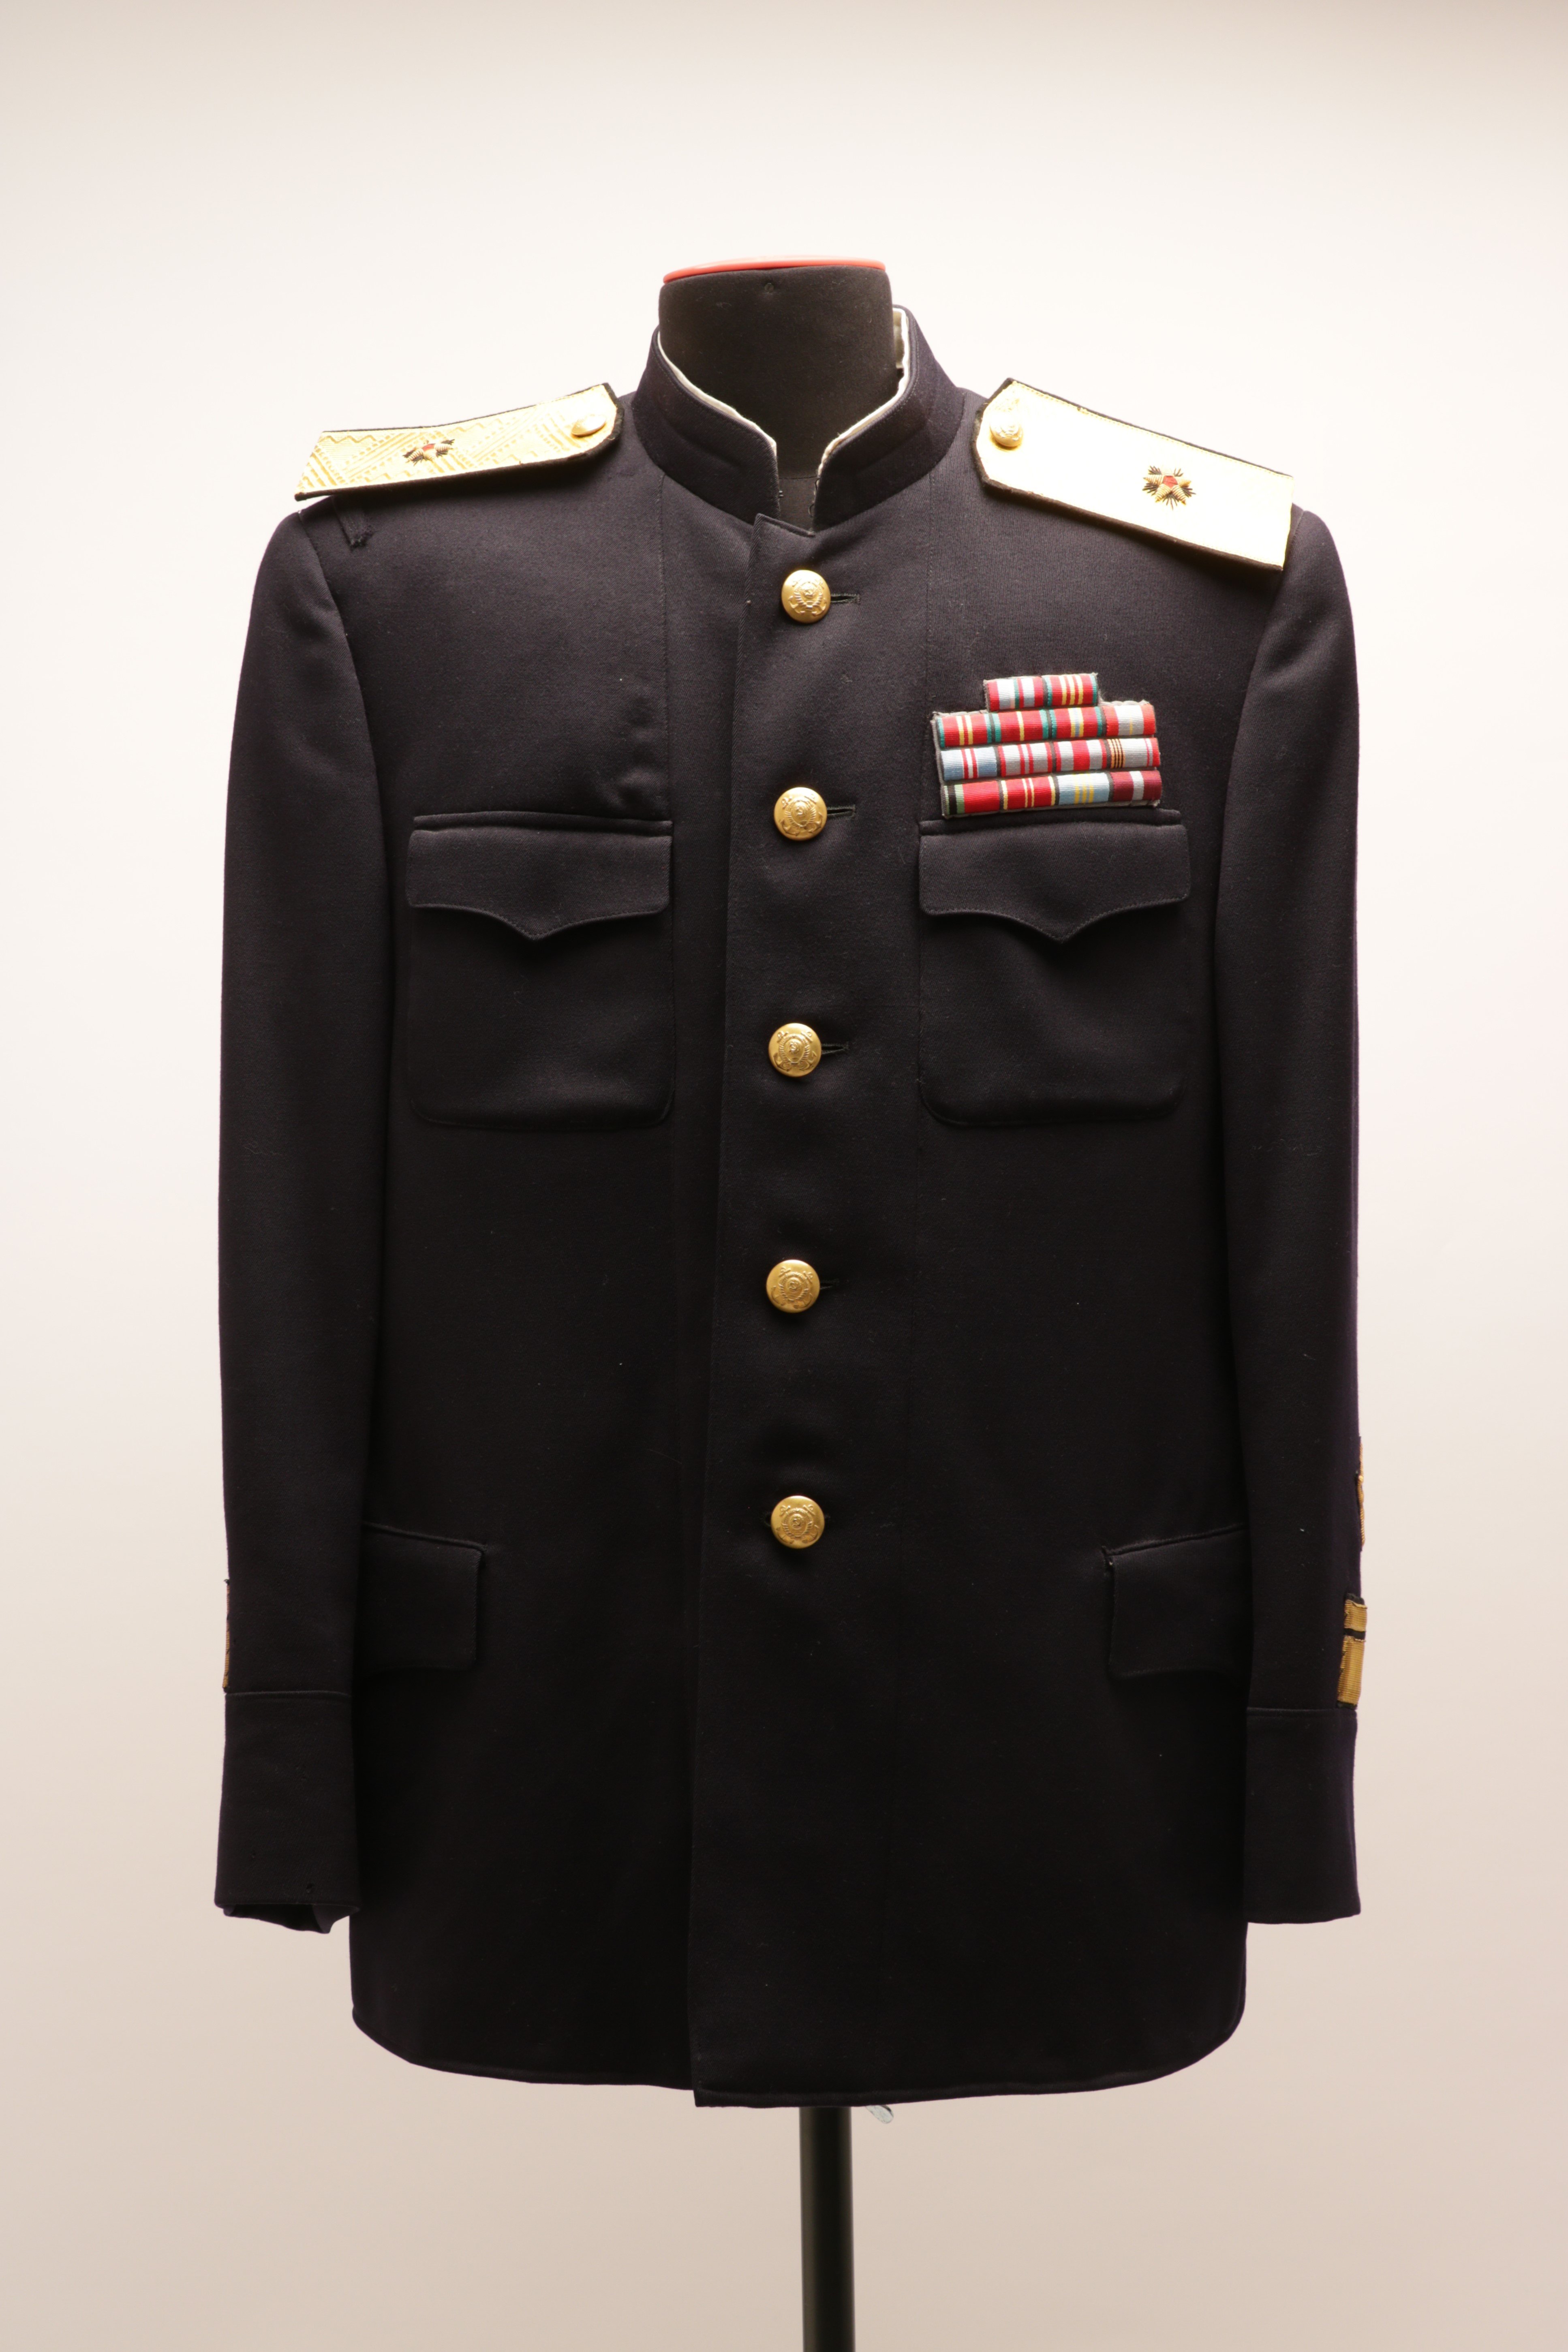 Uniformjacke eines Konteradmirals der Kriegsmarine der Sowjetarmee, Sowjetunion/Russland, vor 1994 (Museum Berlin-Karlshorst CC BY-NC-SA)